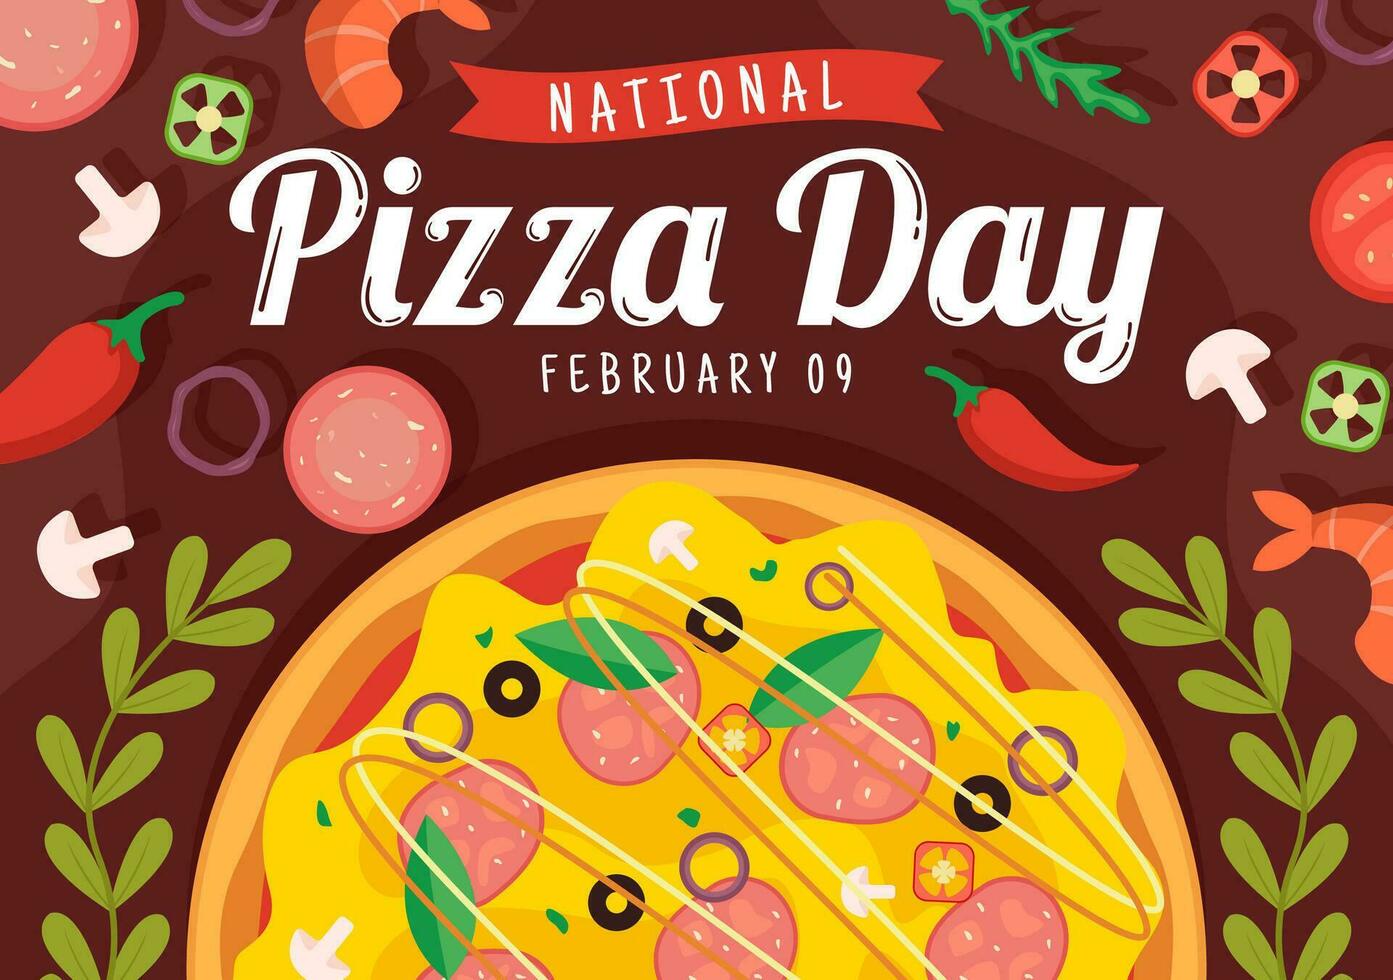 nationell pizza dag vektor illustration på februari 9 med olika pålägg på varje skiva för affisch eller baner i platt tecknad serie bakgrund design